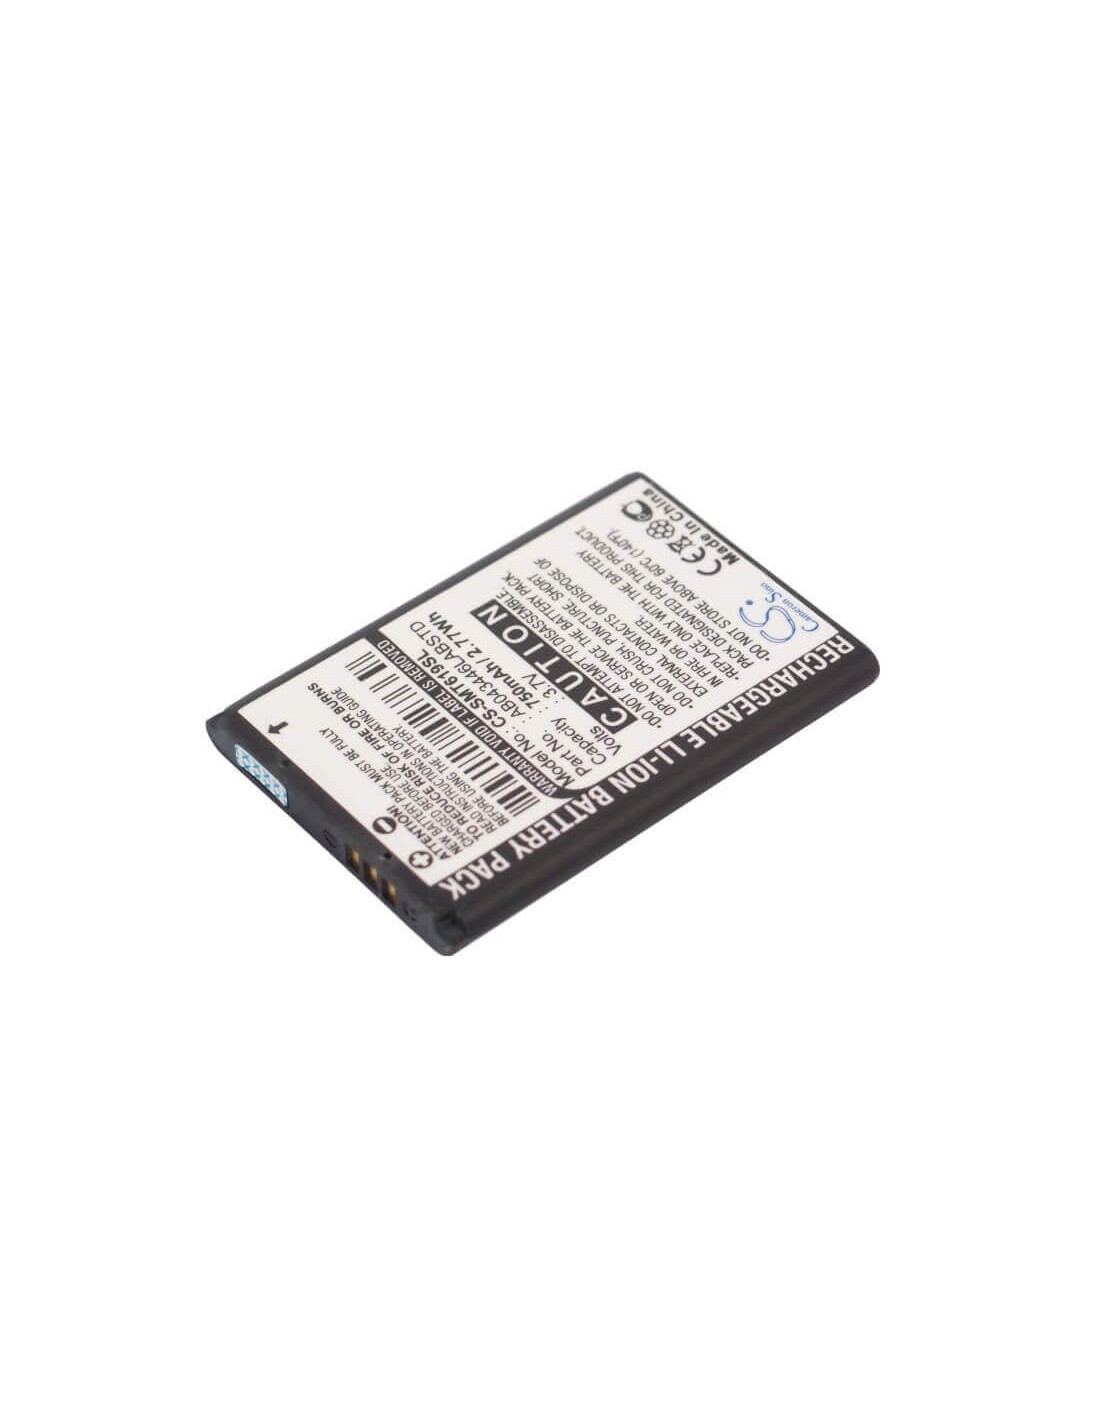 Battery for Samsung SGH-T109, SGH-M220, SGH-A227 3.7V, 750mAh - 2.78Wh